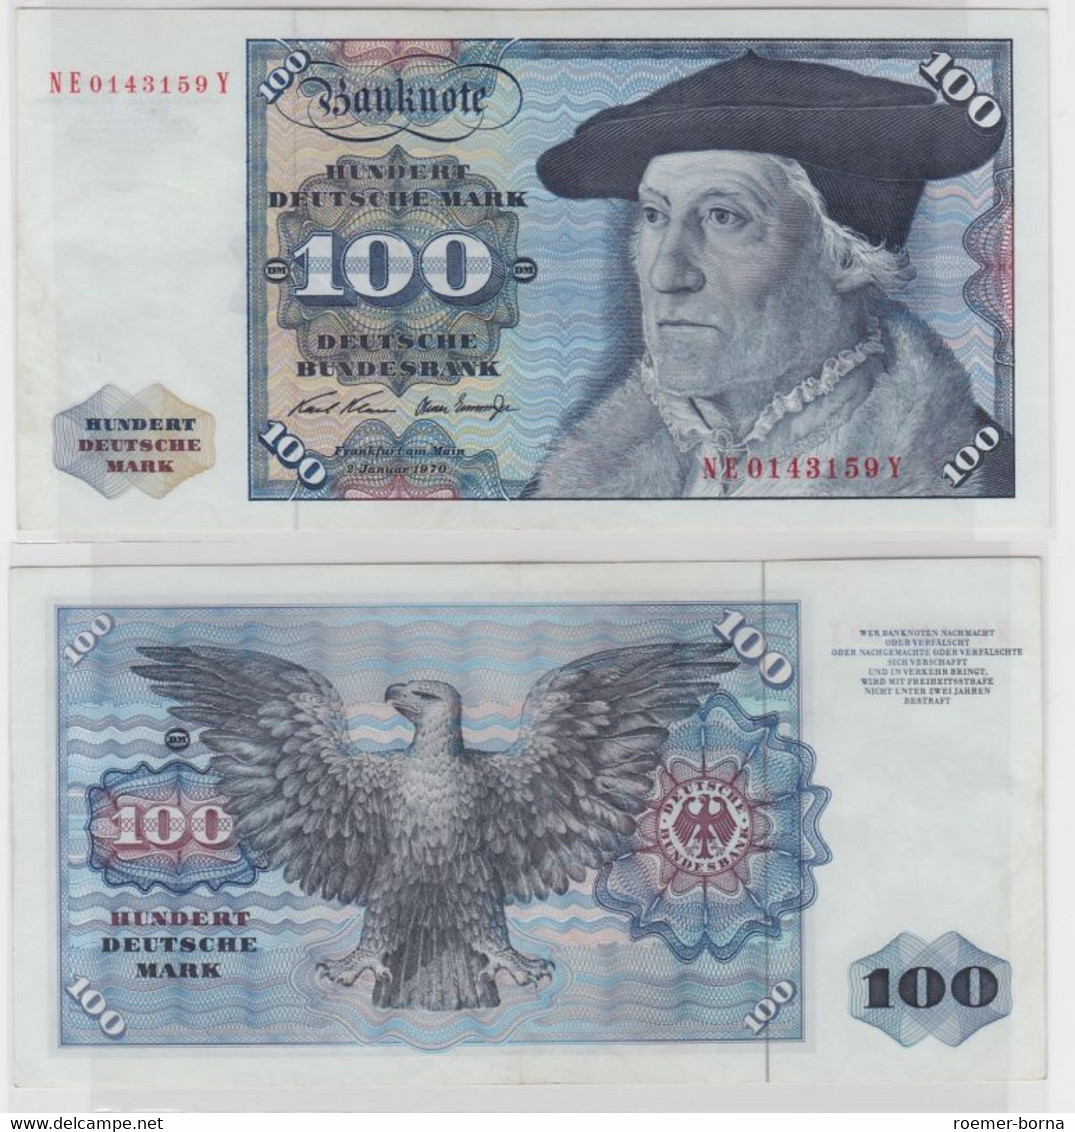 T146076 Banknote 100 DM Deutsche Mark Ro. 273b Schein 2.Jan 1970 KN NE 0143159 Y - 100 Deutsche Mark